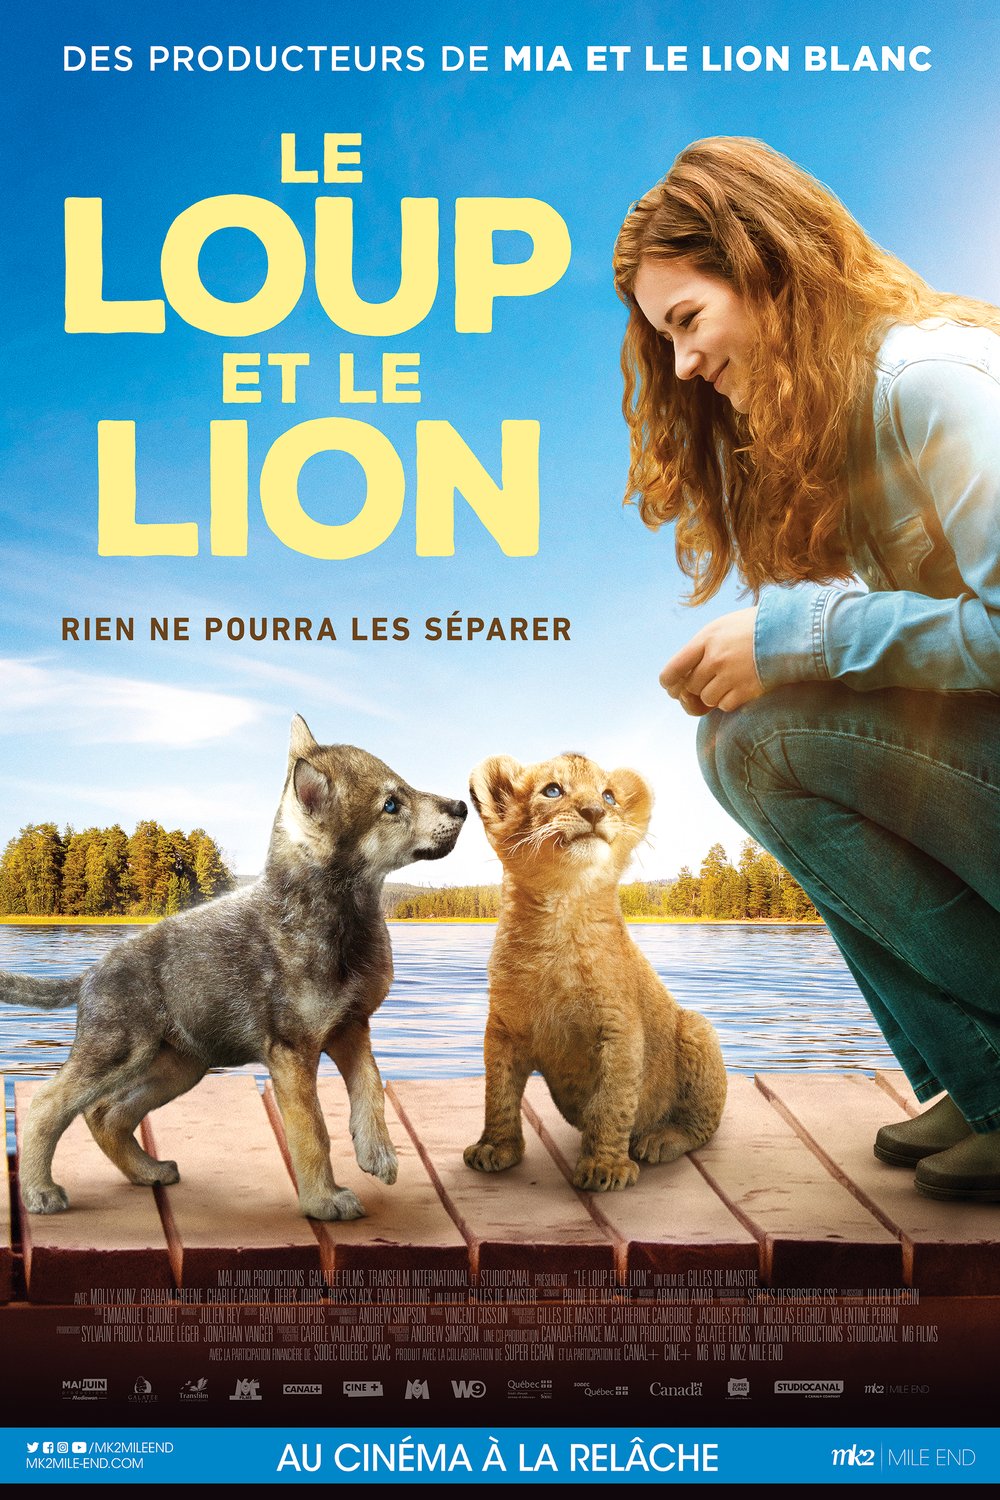 Poster of the movie Le loup et le lion